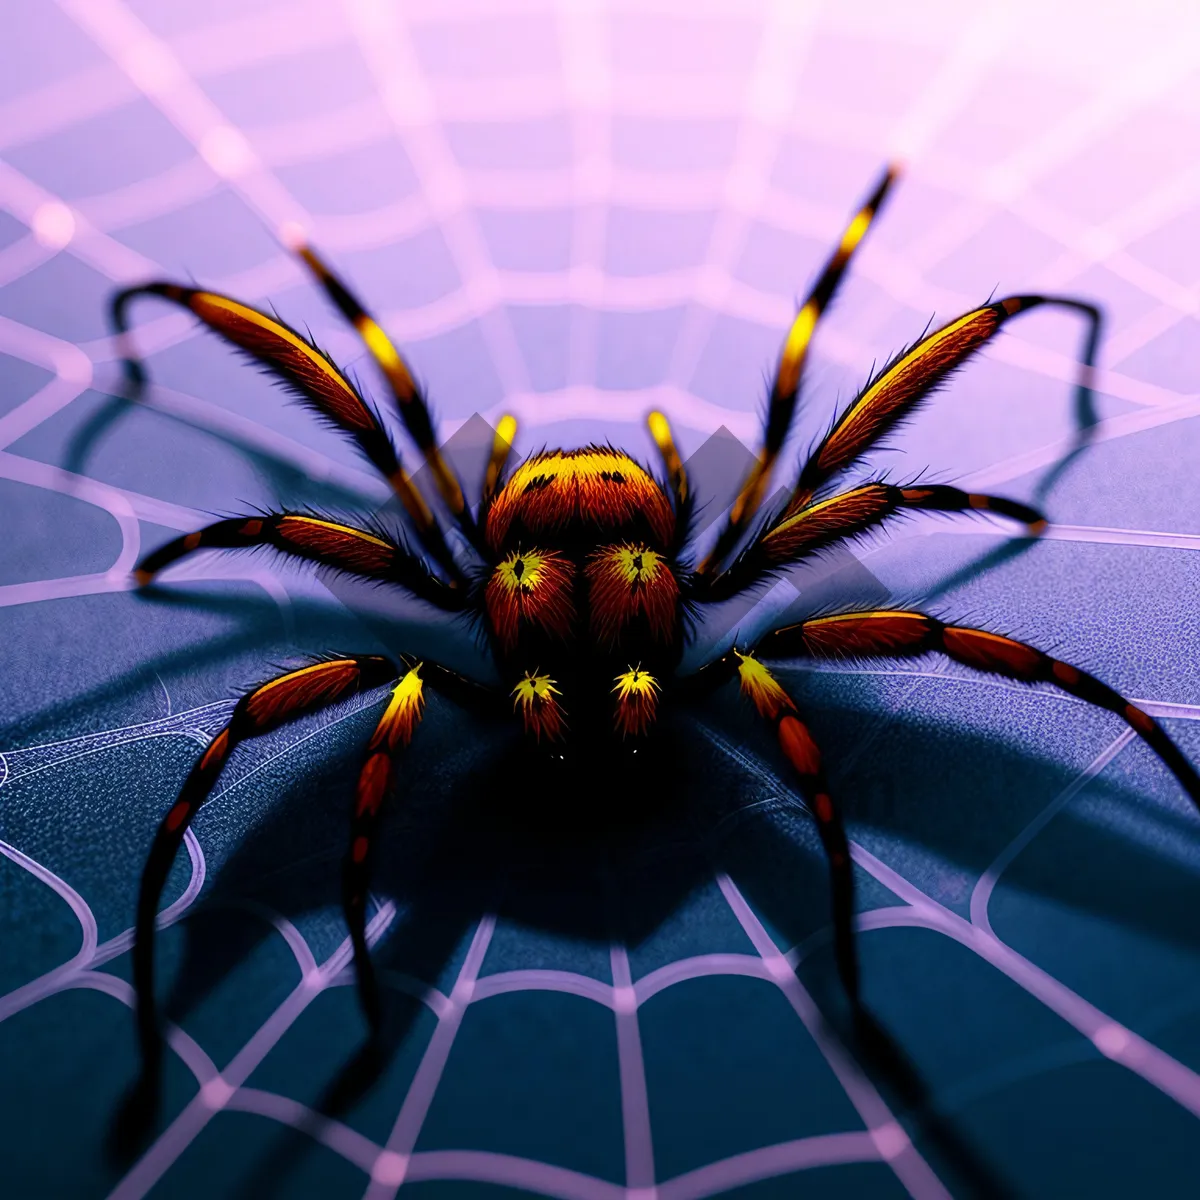 Picture of Chandelier Spider Art: Illuminated Arachnid Design